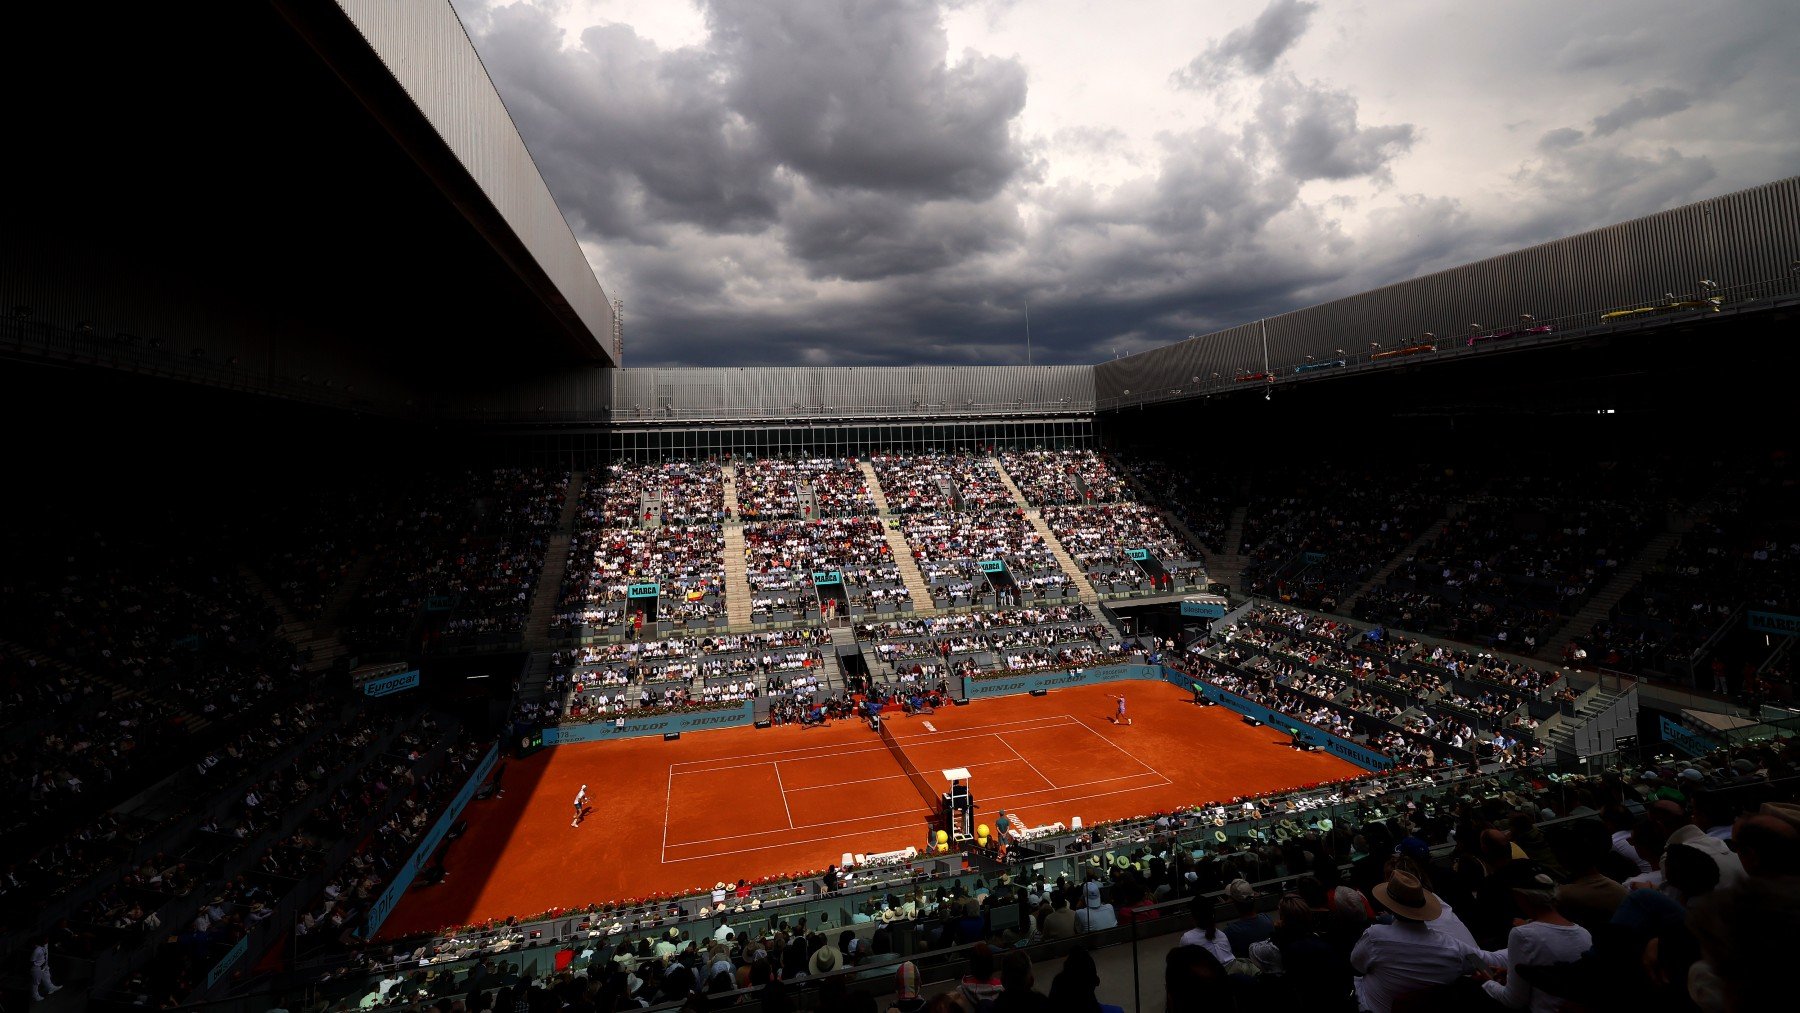 La final del Mutua Madrid Open es el acontecimiento más esperado del torneo. (Foto: Getty)